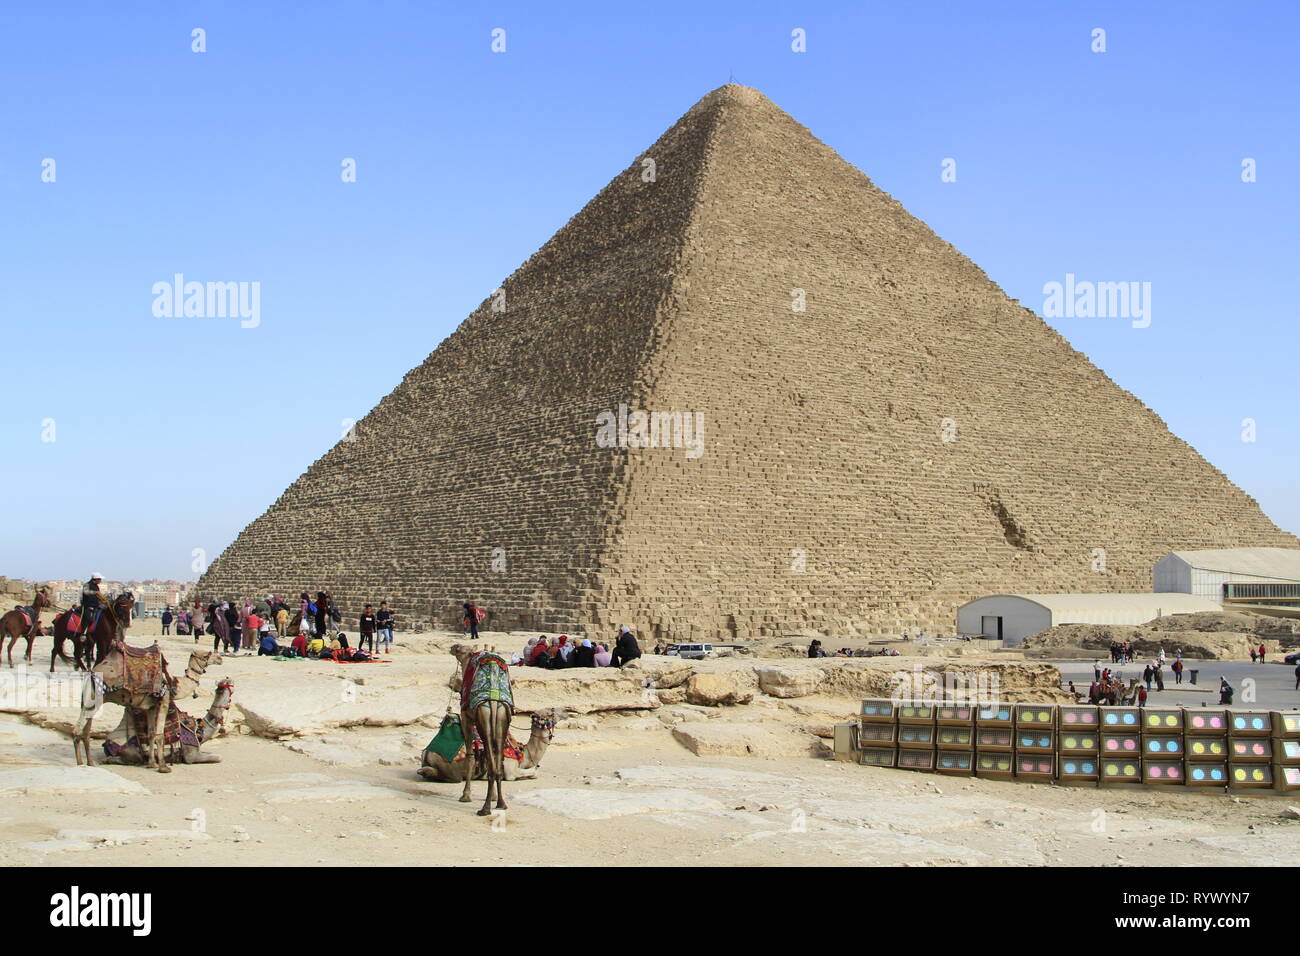 Les chameaux bâtés et attendent les visiteurs à payer à leur tour, complexe Pyramide de Gizeh, Le Caire, Egypte Banque D'Images